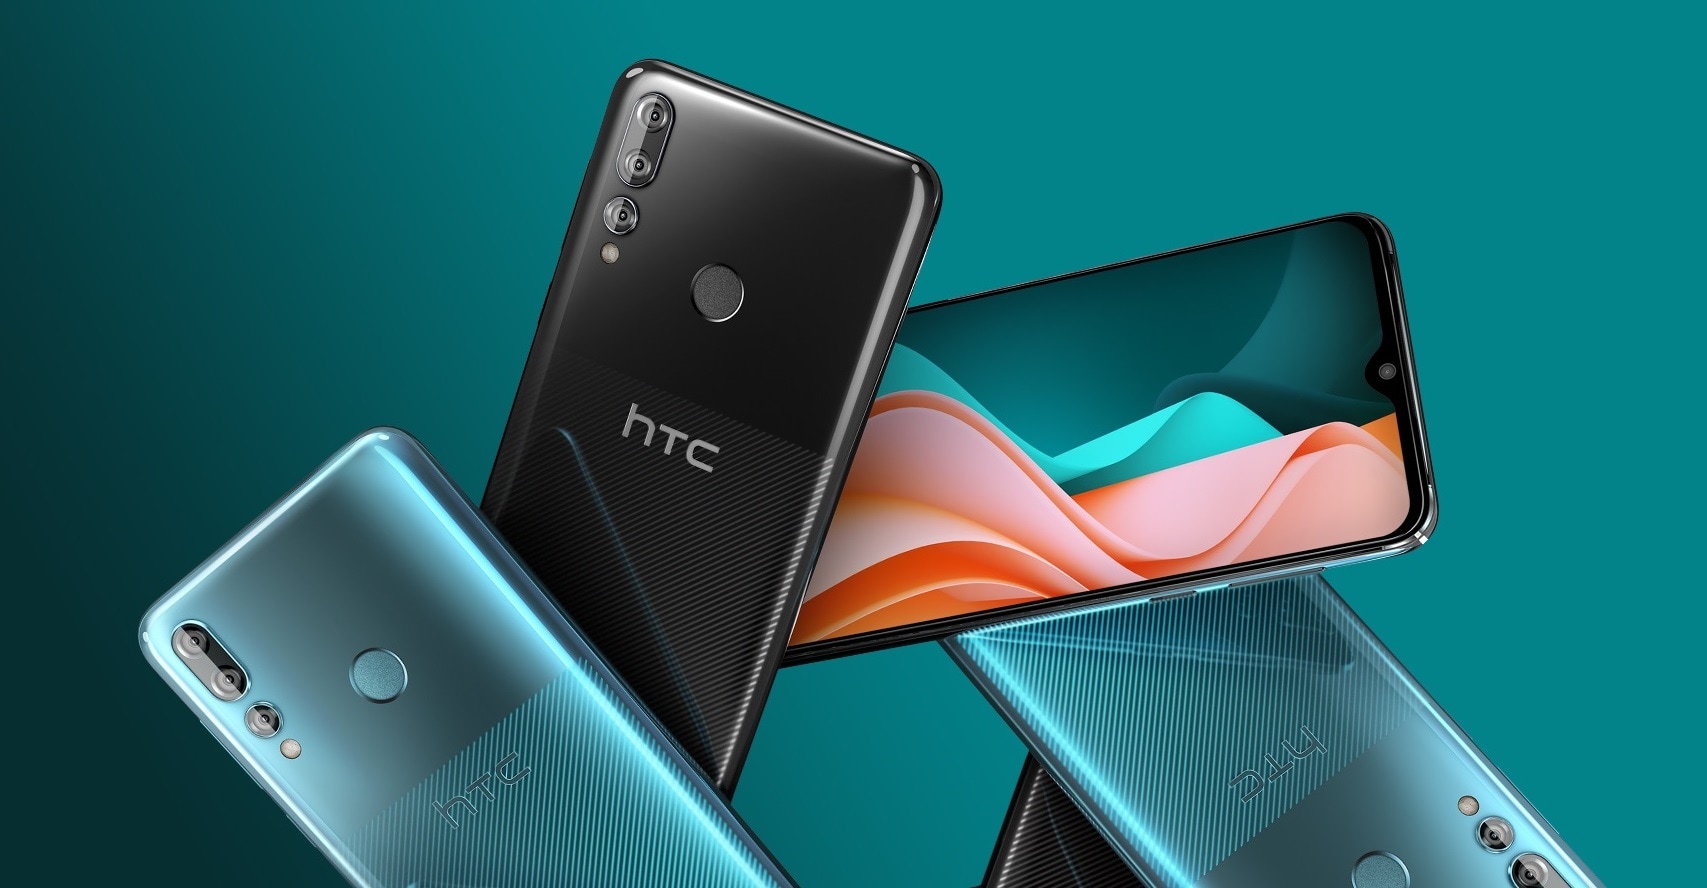 Aquí está el nuevo HTC Desire 19s para la gama media-baja: procesador MediaTek Helio P22 y Android Pie (foto)